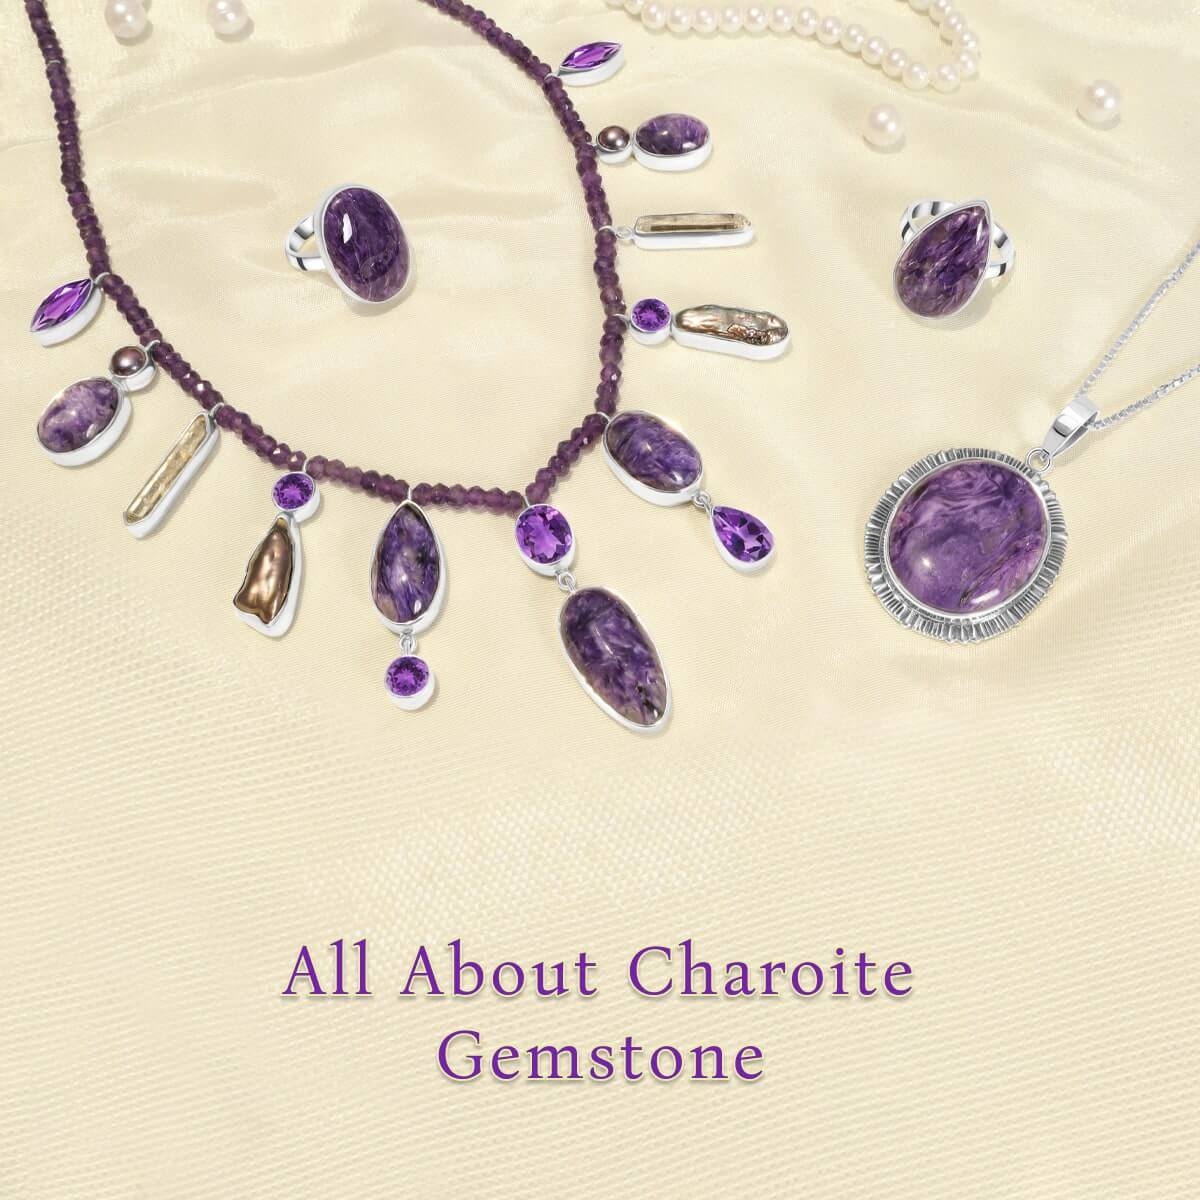 Charoite Gemstone Origin, Uses, Benefits, Zodiac Sign and Healing Properties